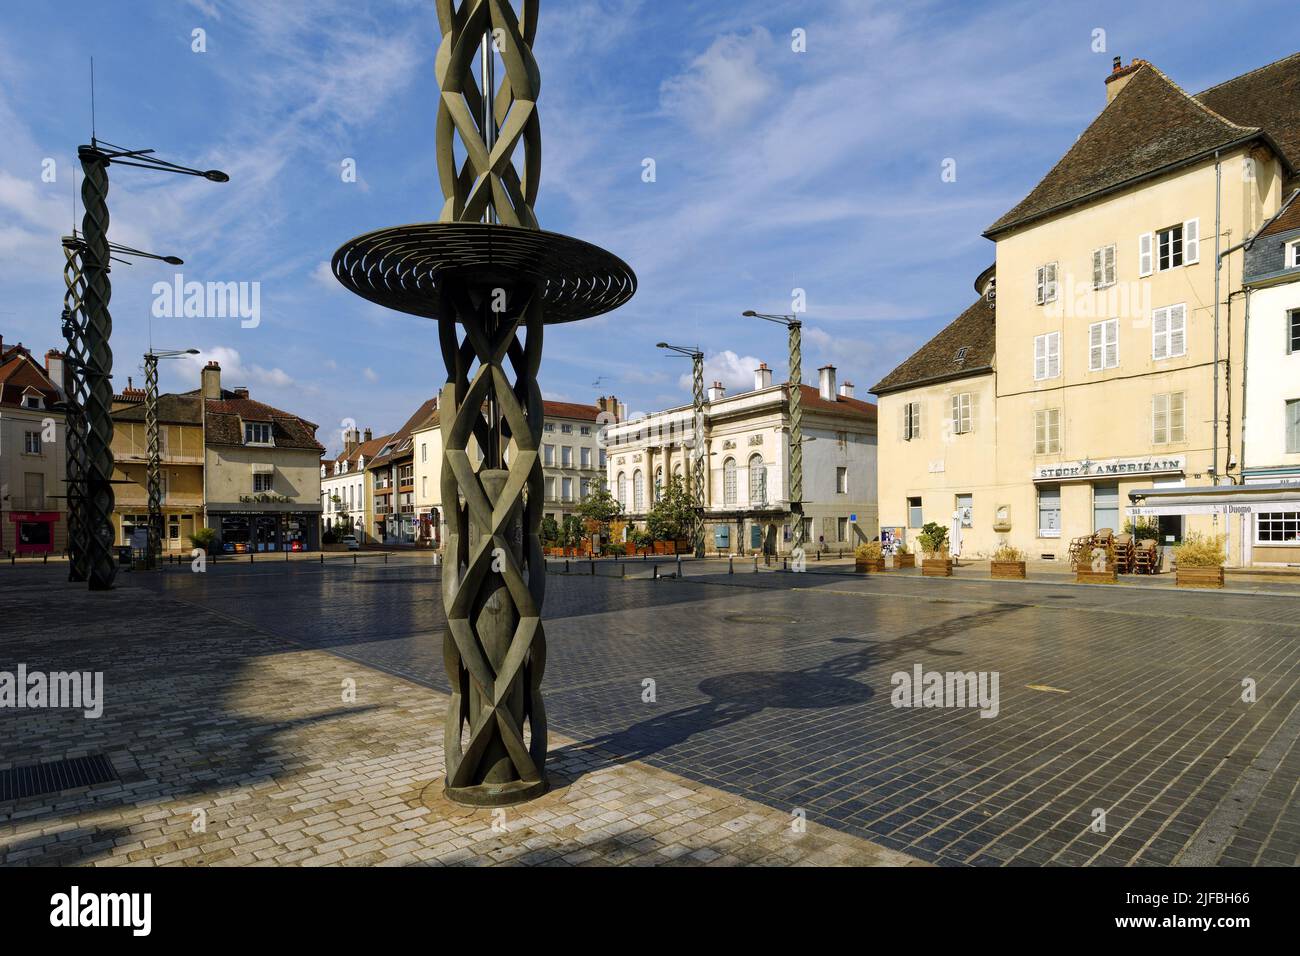 France, Saone et Loire, Chalon sur Saone, place de l'Hotel de Ville (Town Hall square) Stock Photo